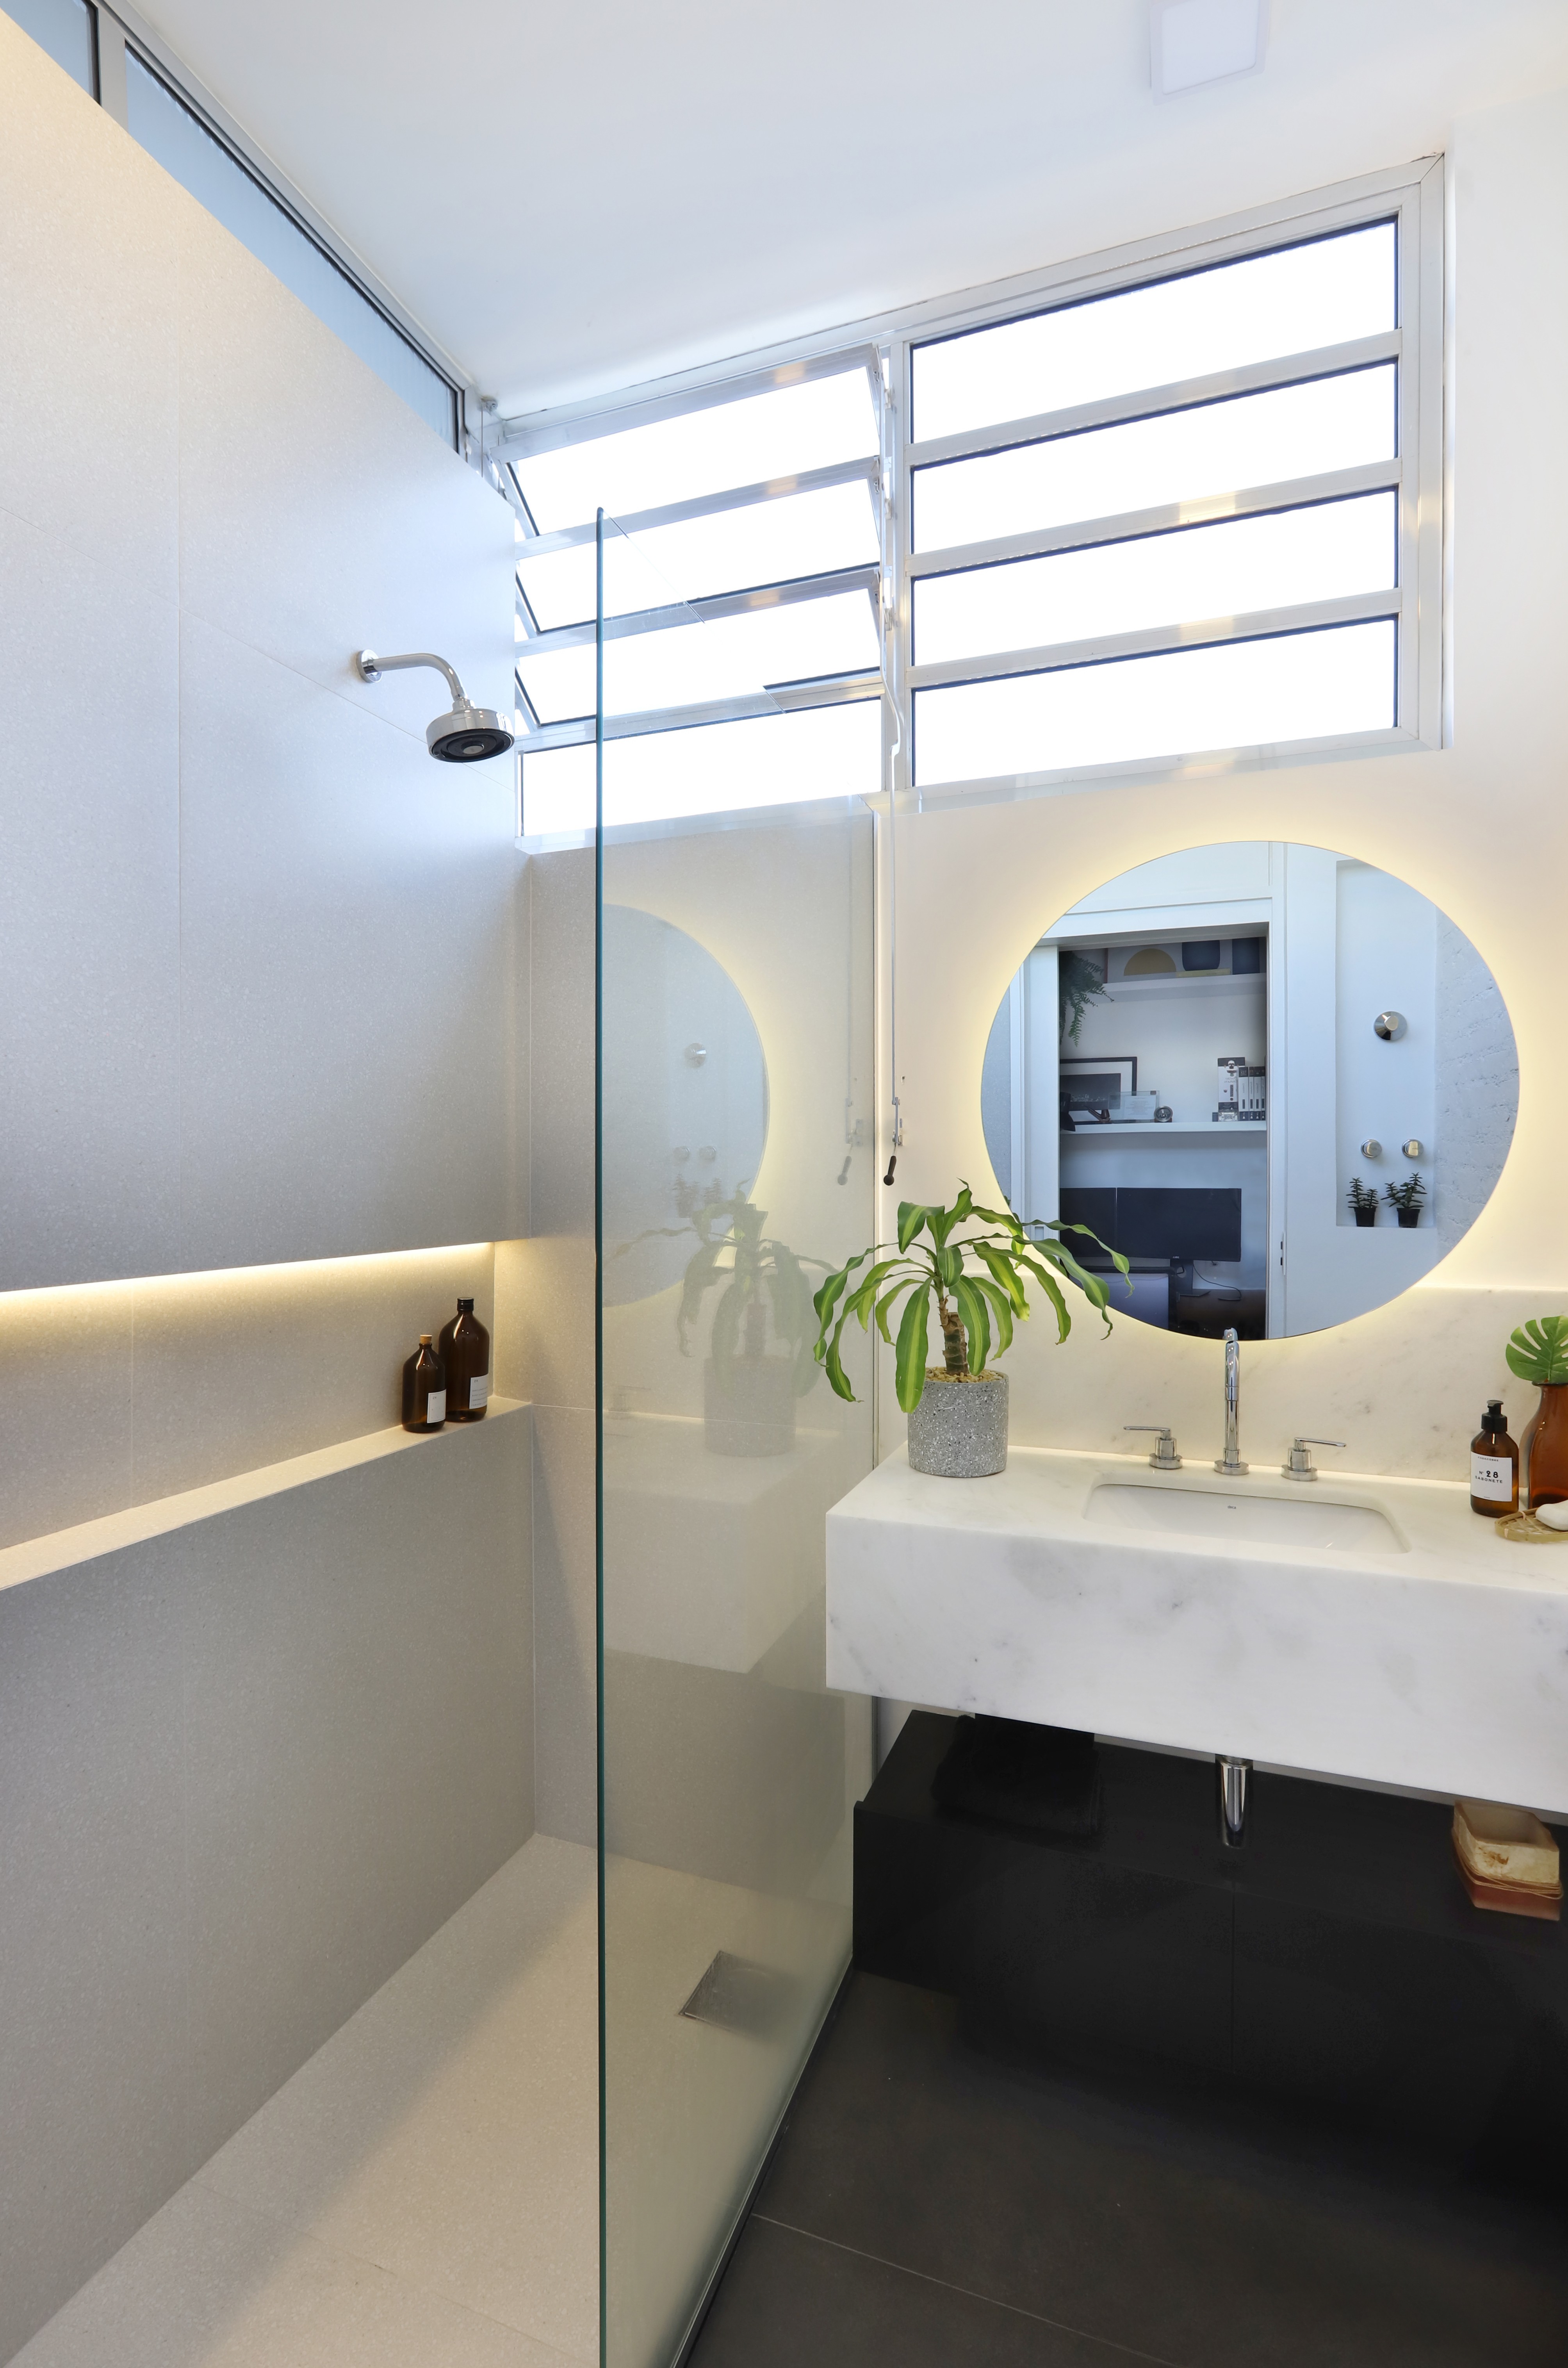 No banheiro de hóspedes, as arquitetas trabalharam um estilo mais clean com tons claros (Foto: Mariana Orsi / Divulgação)